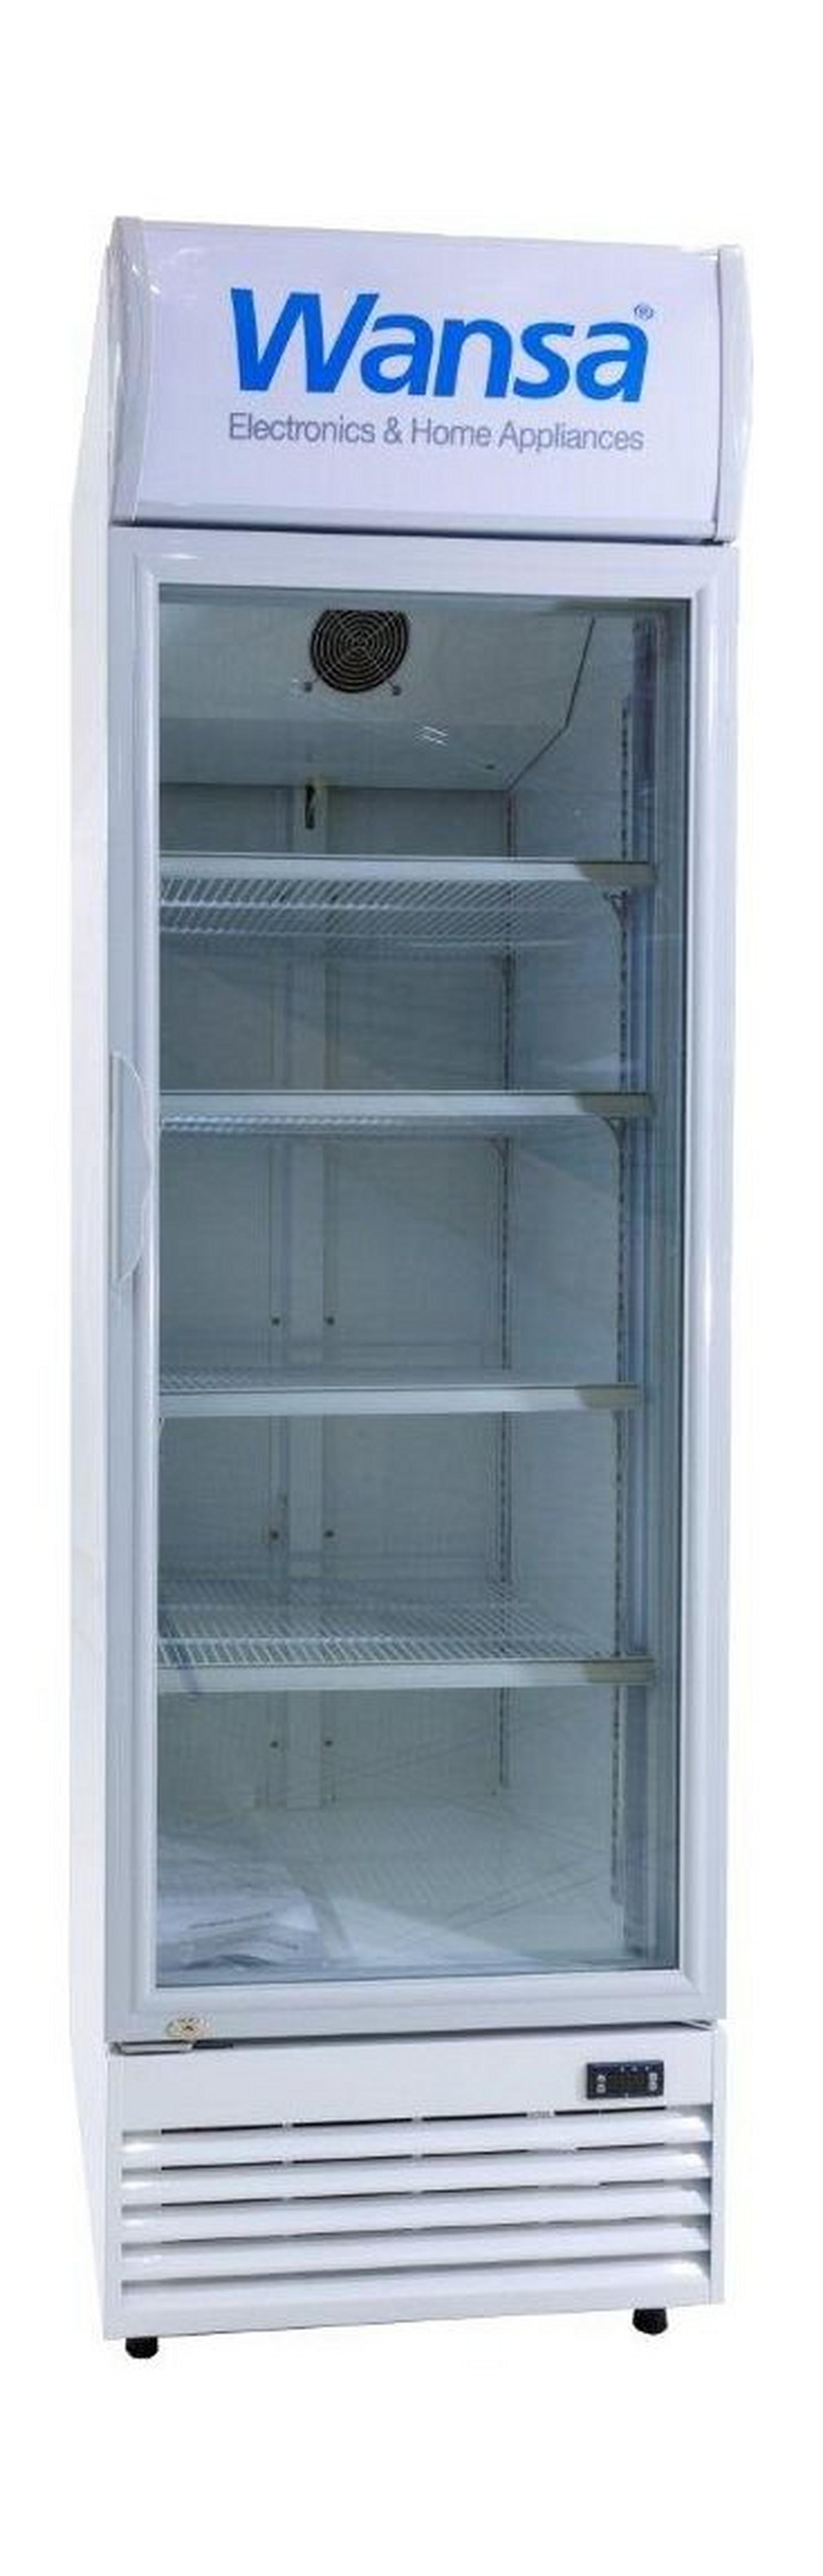 ثلاجة بباب شفاف ونسا ١٥ قدم – أبيض (WUSC-430-NFWT)